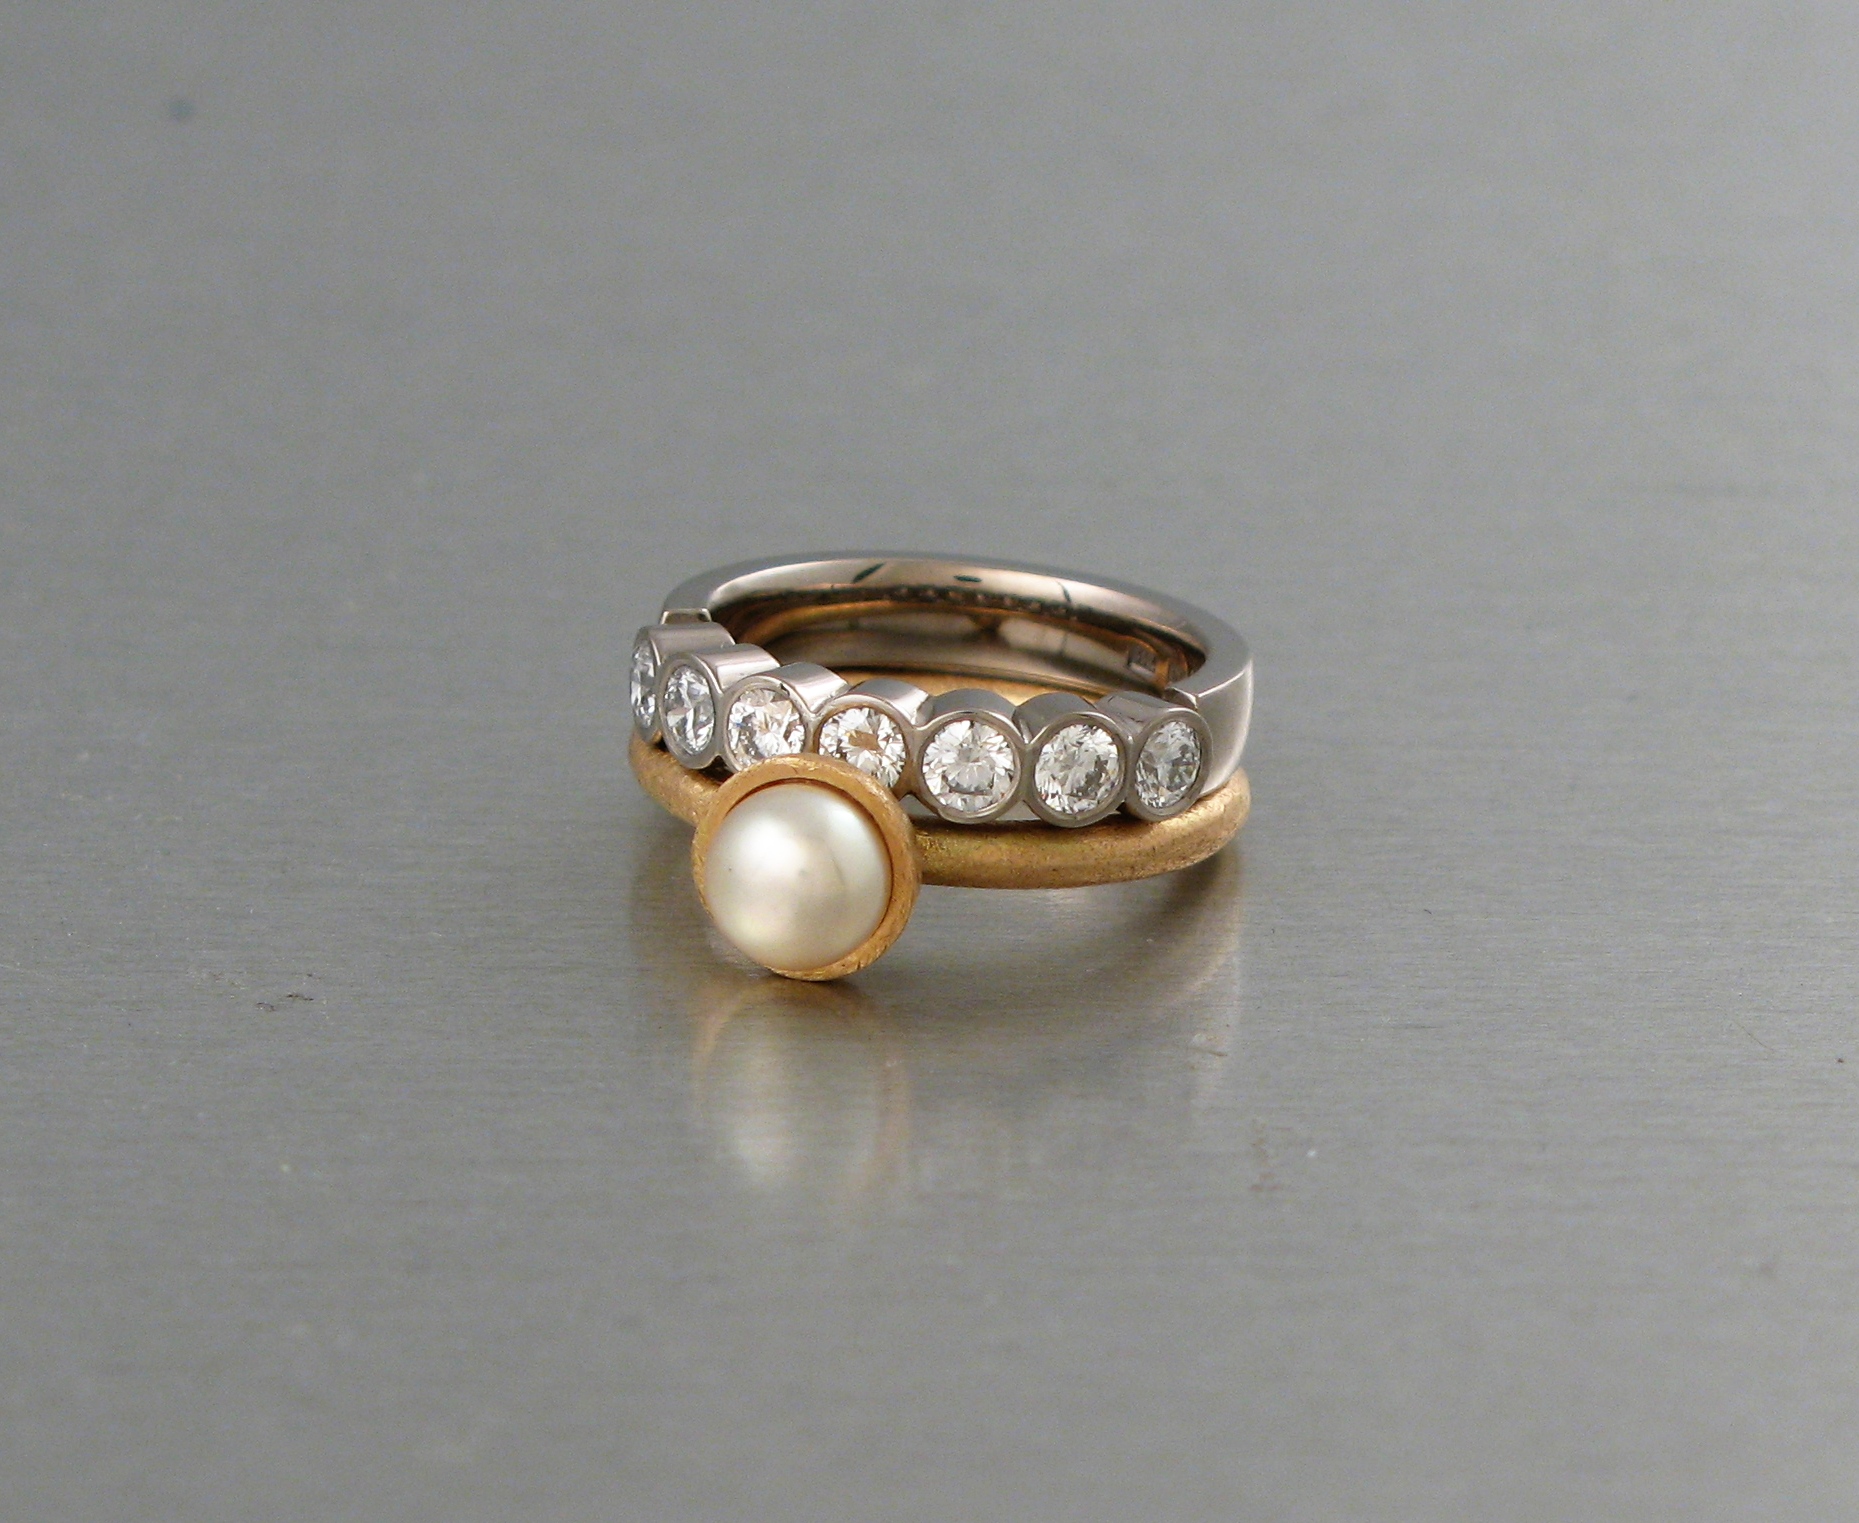 Ring, ”Stor Pytteliten”, guld och pärla. Alliancering, vitt guld och diamanter.